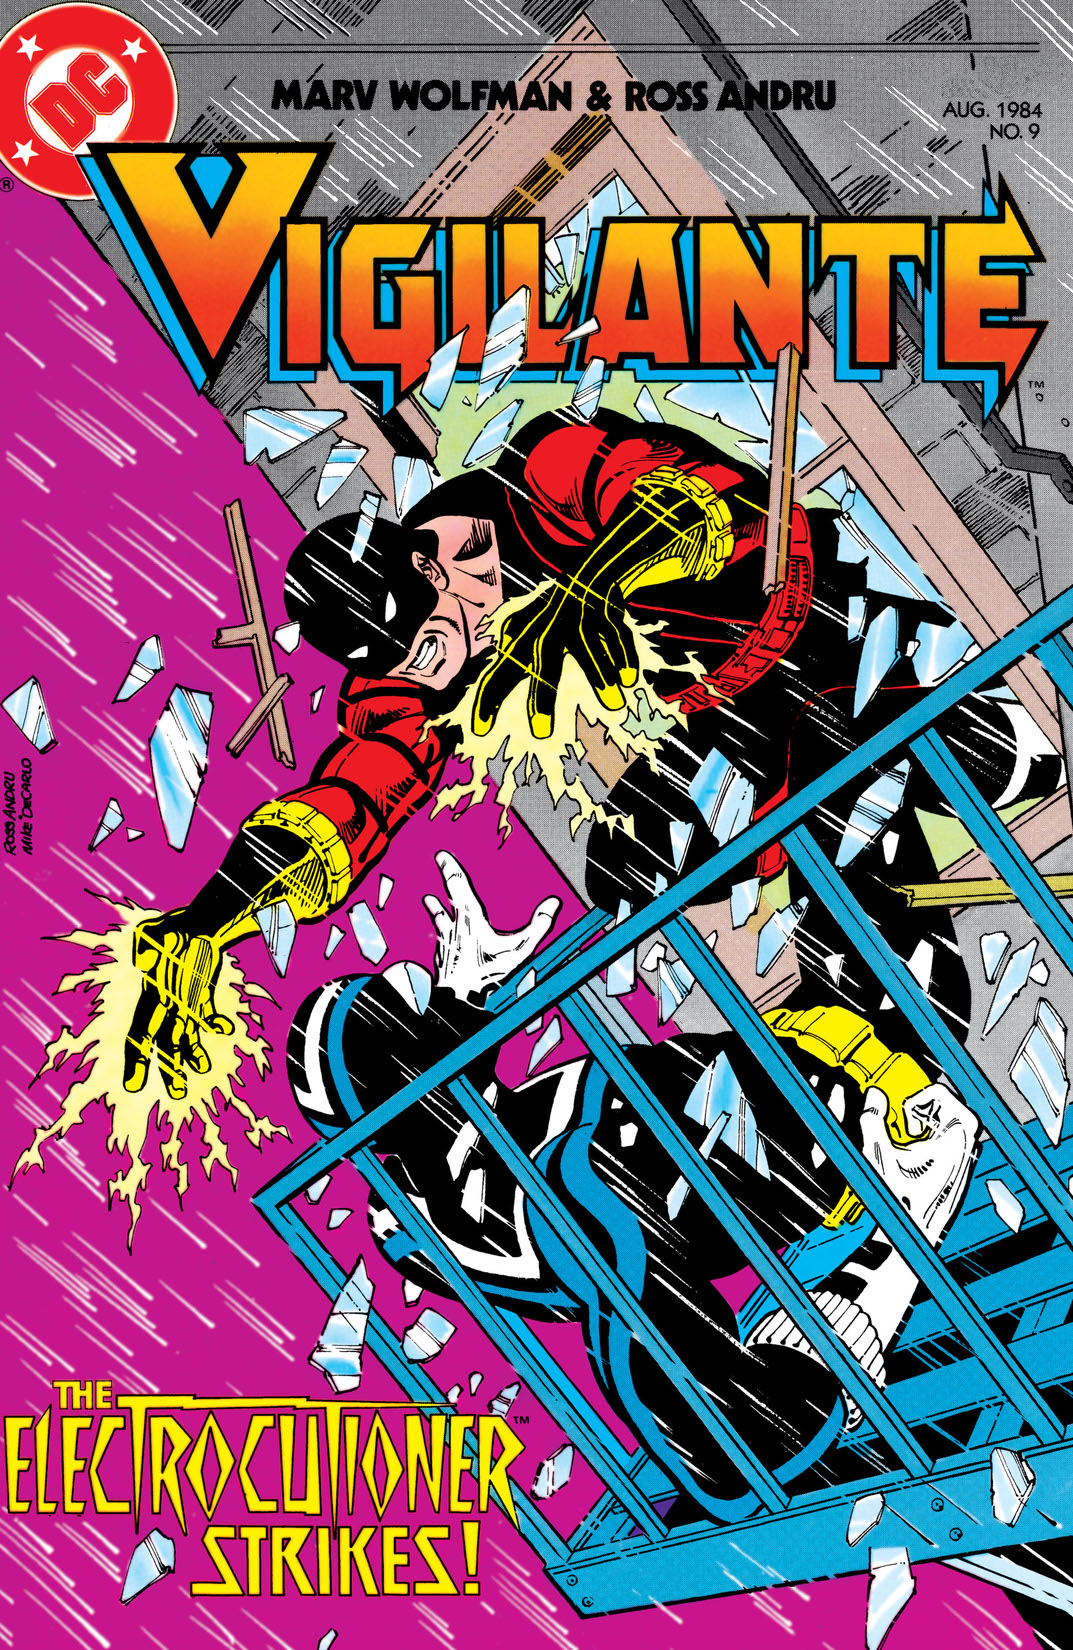 The Vigilante #9 preview images